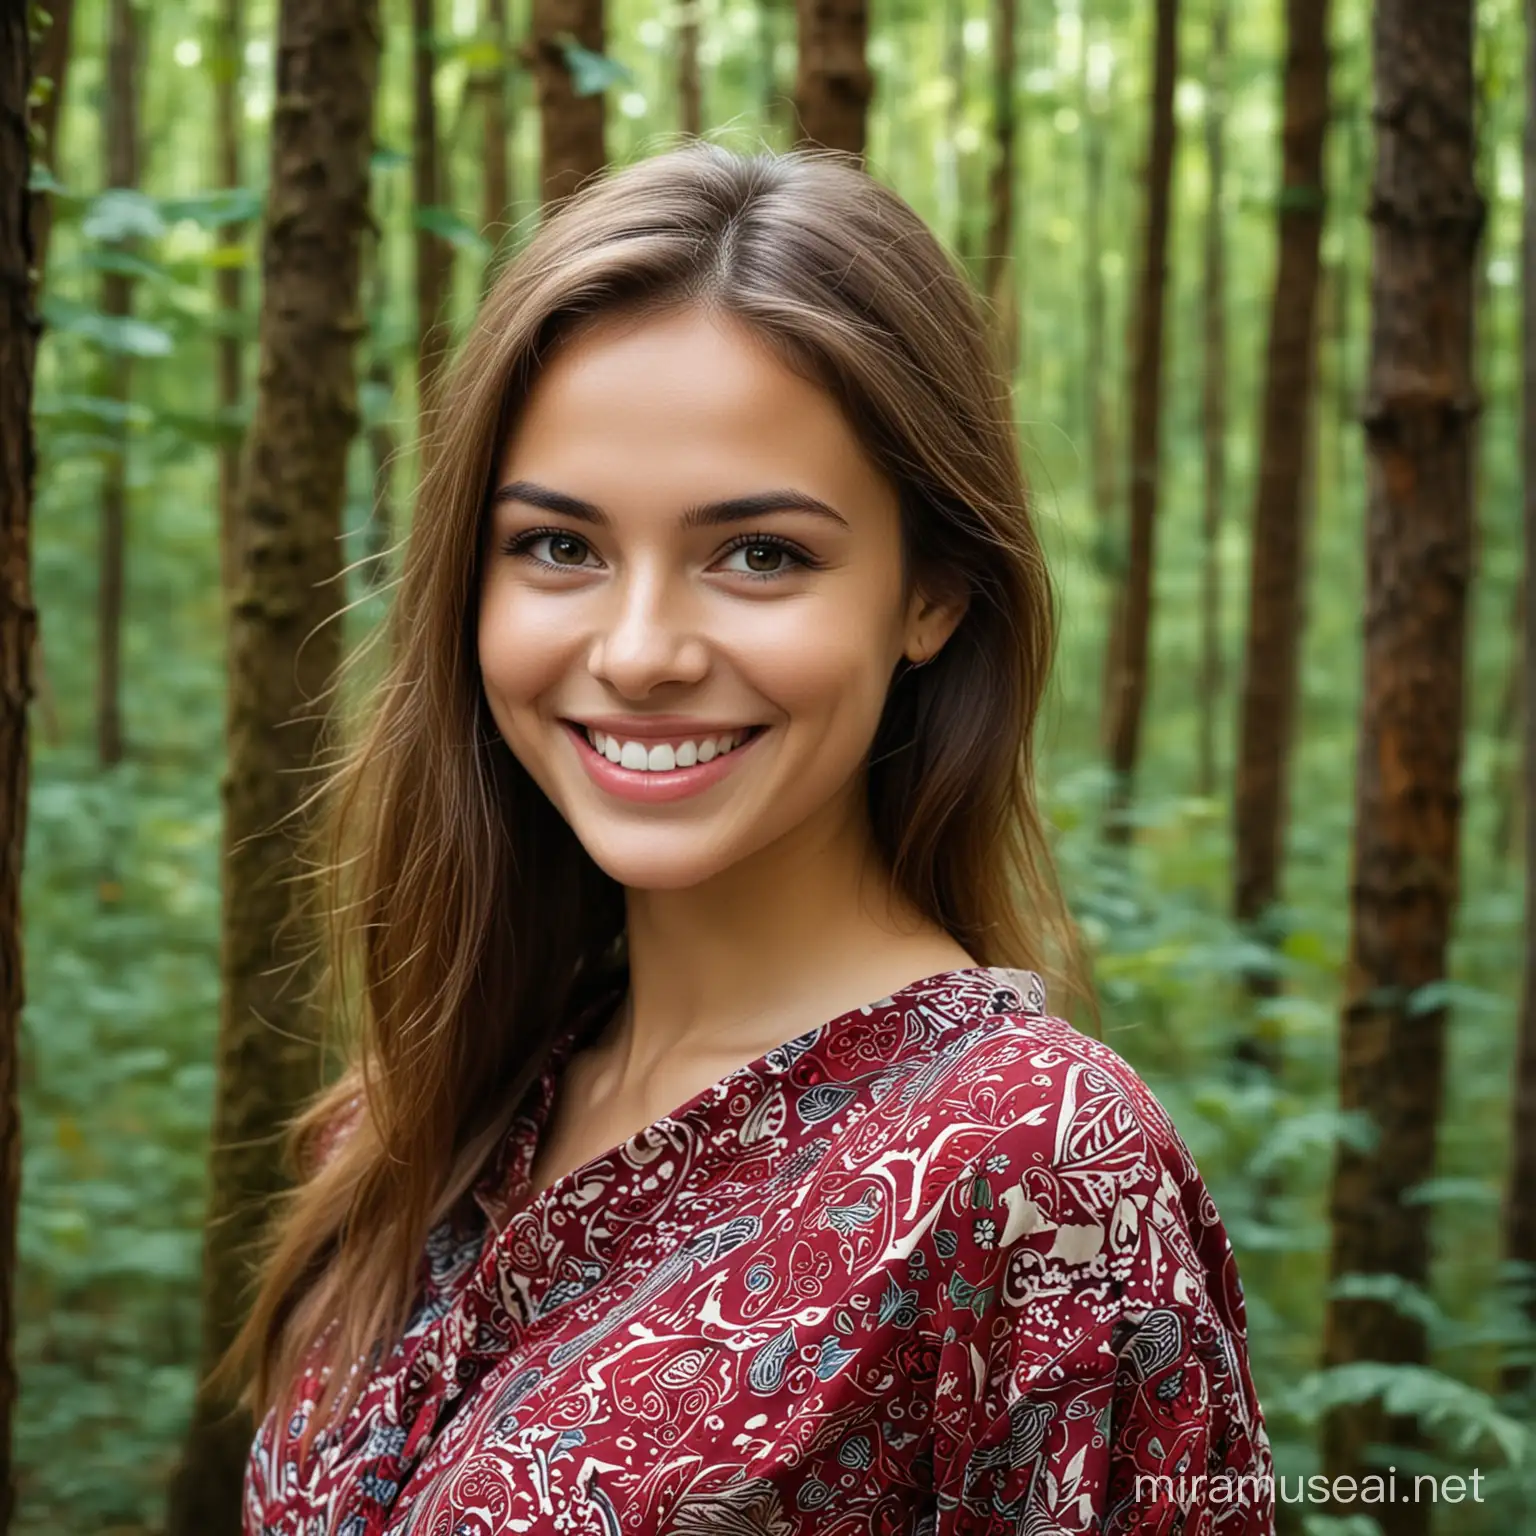 Beautiful girl smile, batik, forest